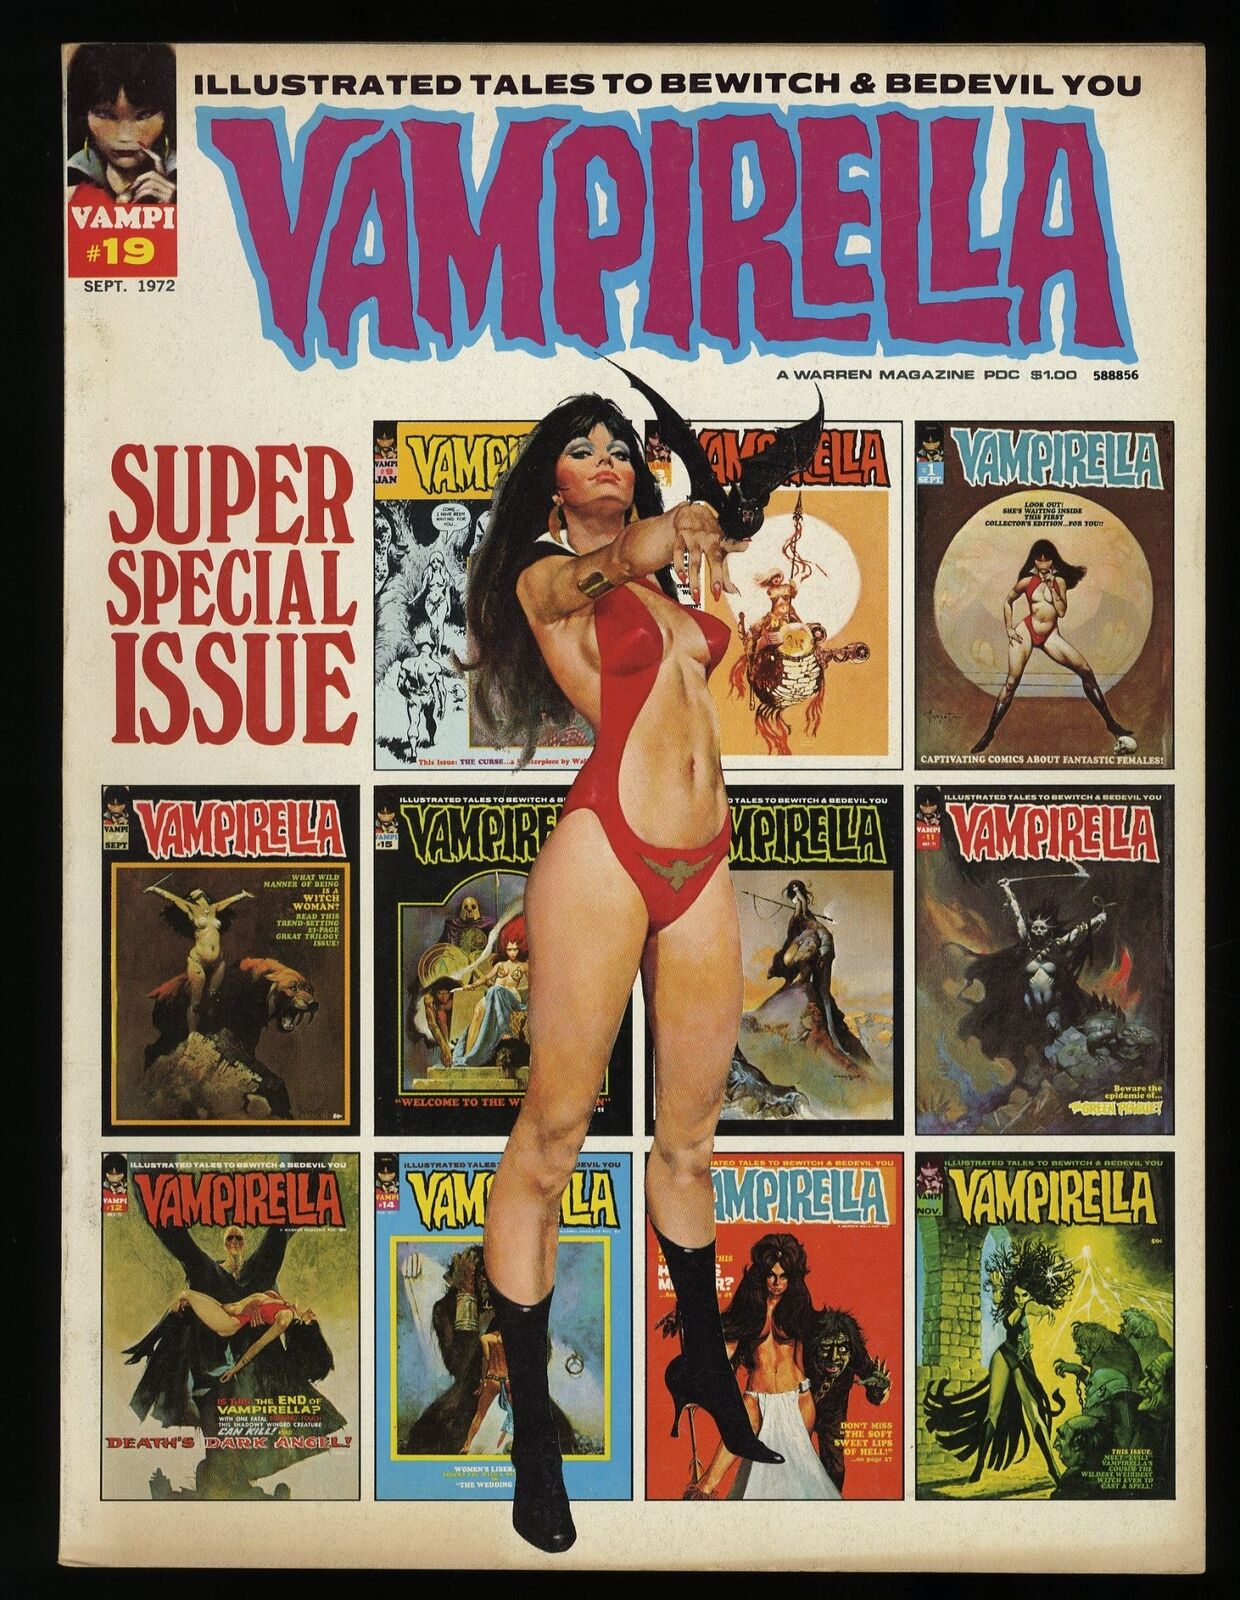 Vampirella #19 FN/VF 7.0 Jose Gonzales Cover Art Neal Adams art Warren 1972